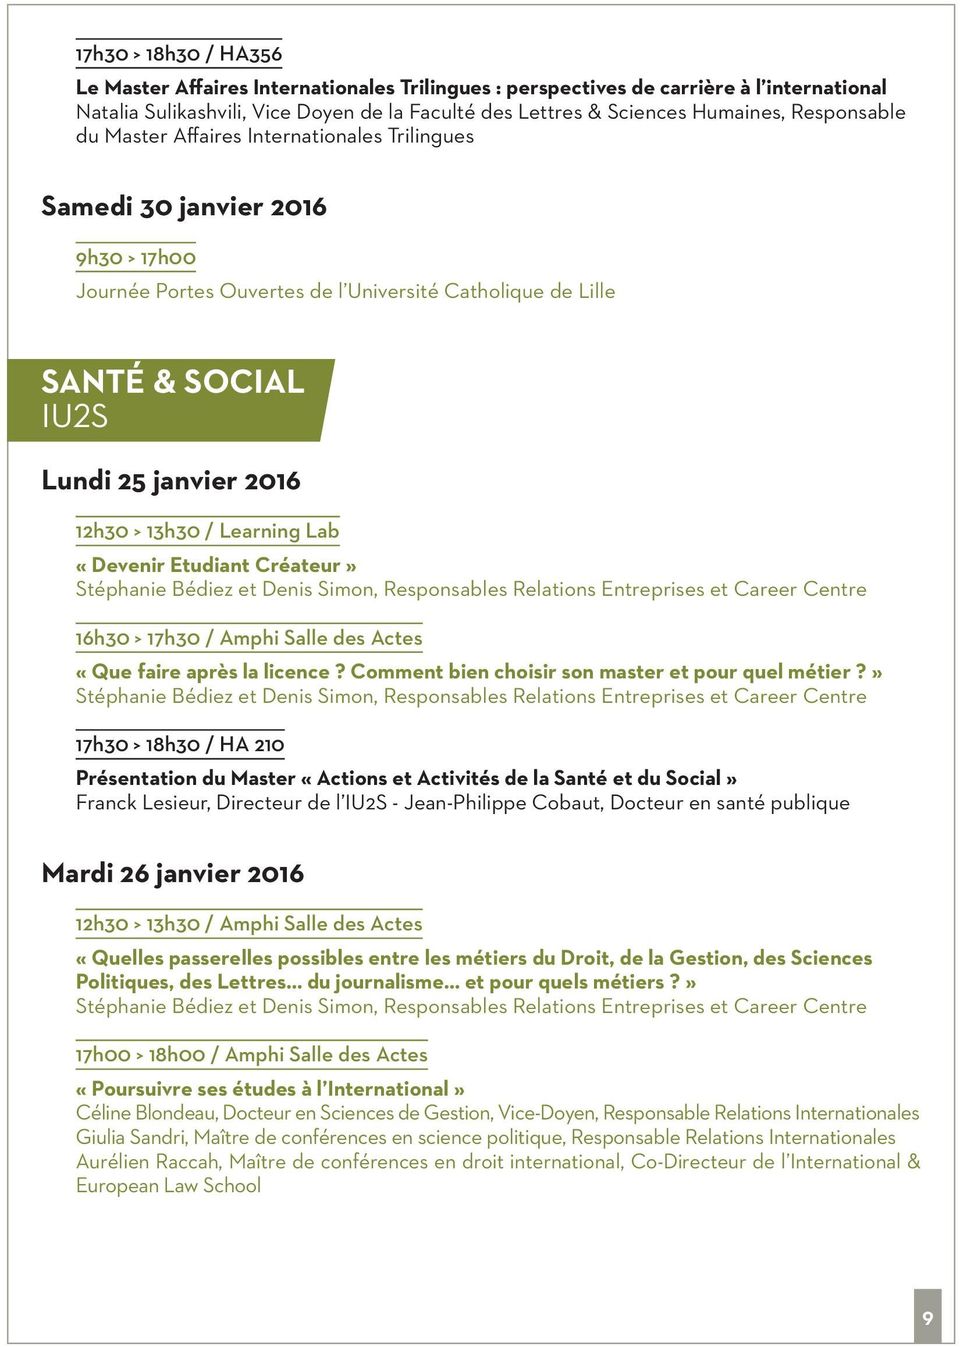 internationales trilingues SANté & SOCIAL iu2s 17h30 > 18h30 / HA 210 Présentation du Master «Actions et Activités de